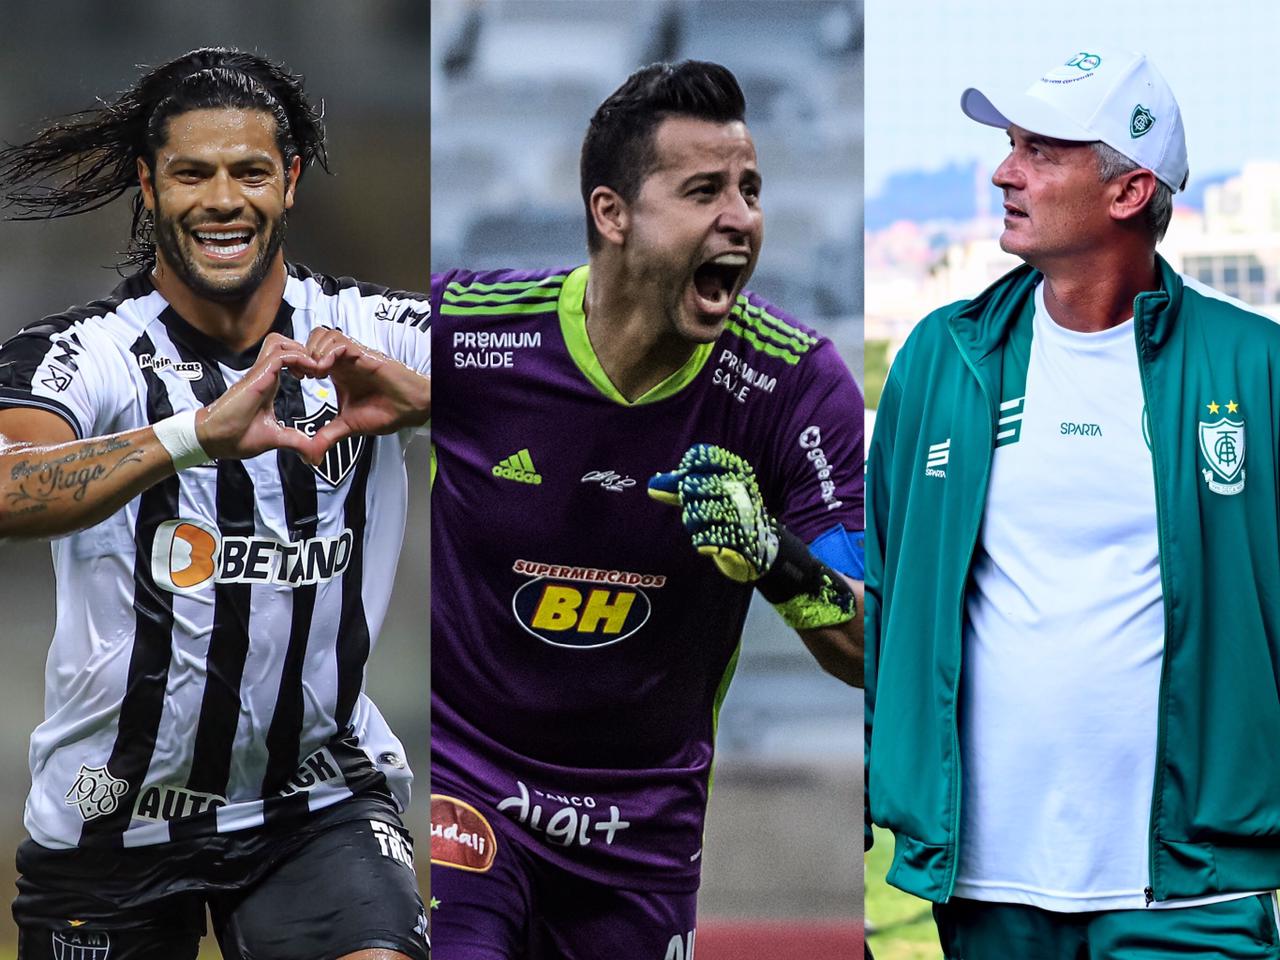 Com Fábio, Hulk e Lisca no time, a seleção ENM do Campeonato Mineiro está no ar; confira